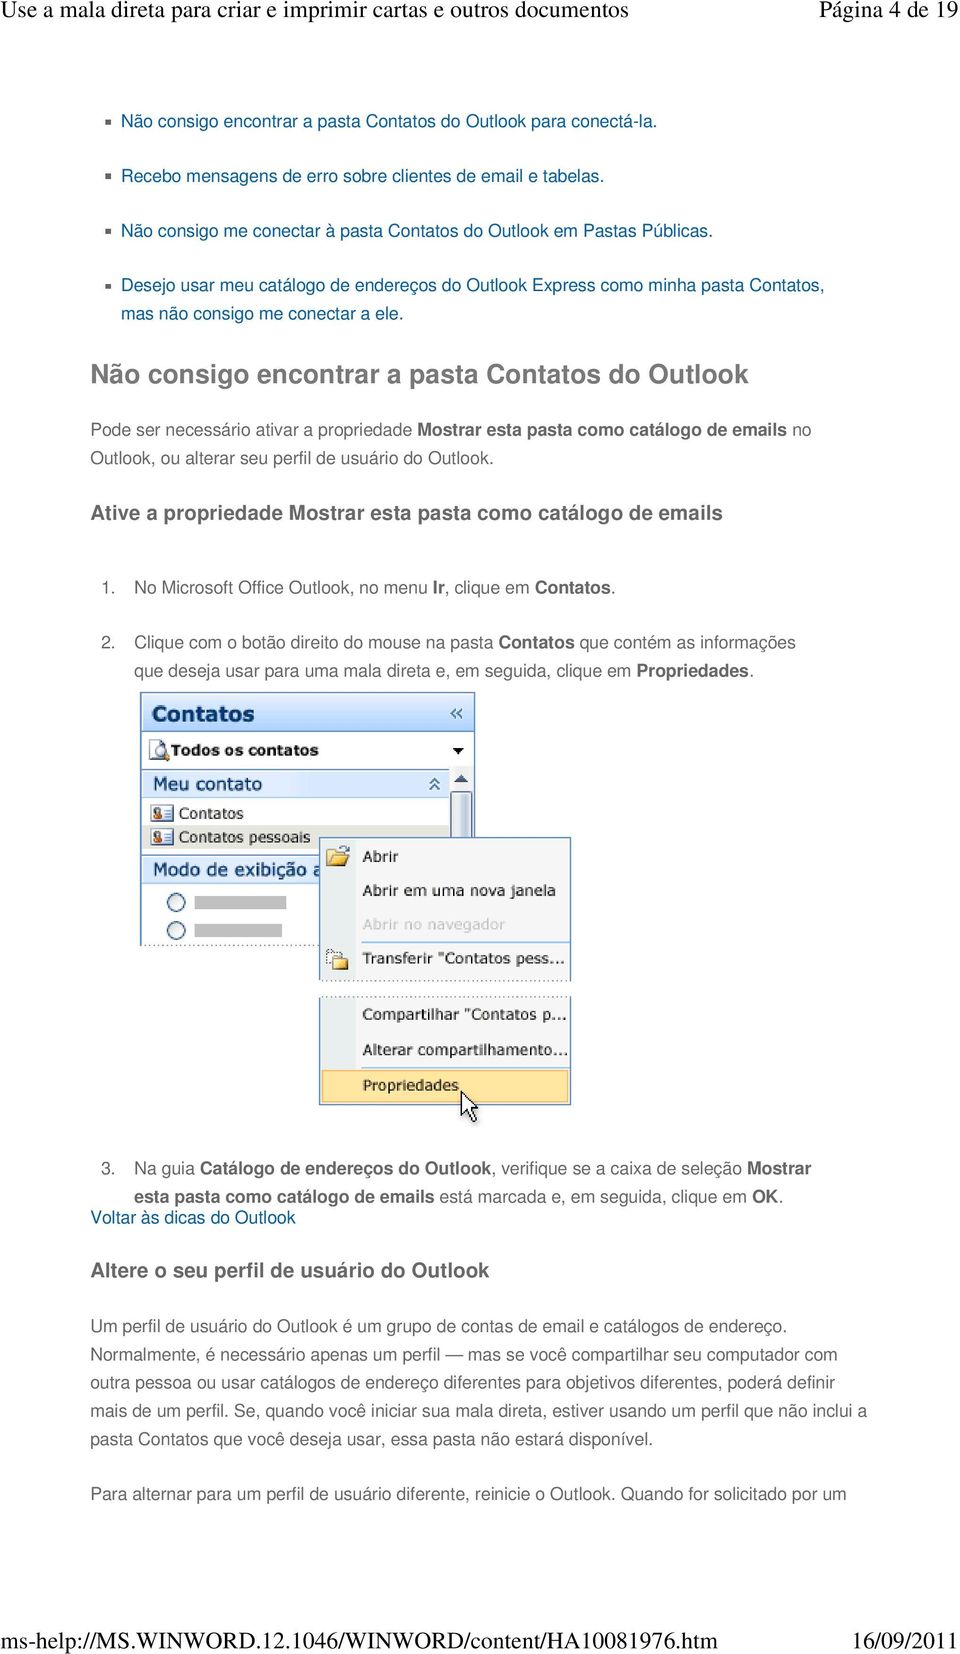 Não consigo encontrar a pasta Contatos do Outlook Pode ser necessário ativar a propriedade Mostrar esta pasta como catálogo de emails no Outlook, ou alterar seu perfil de usuário do Outlook.